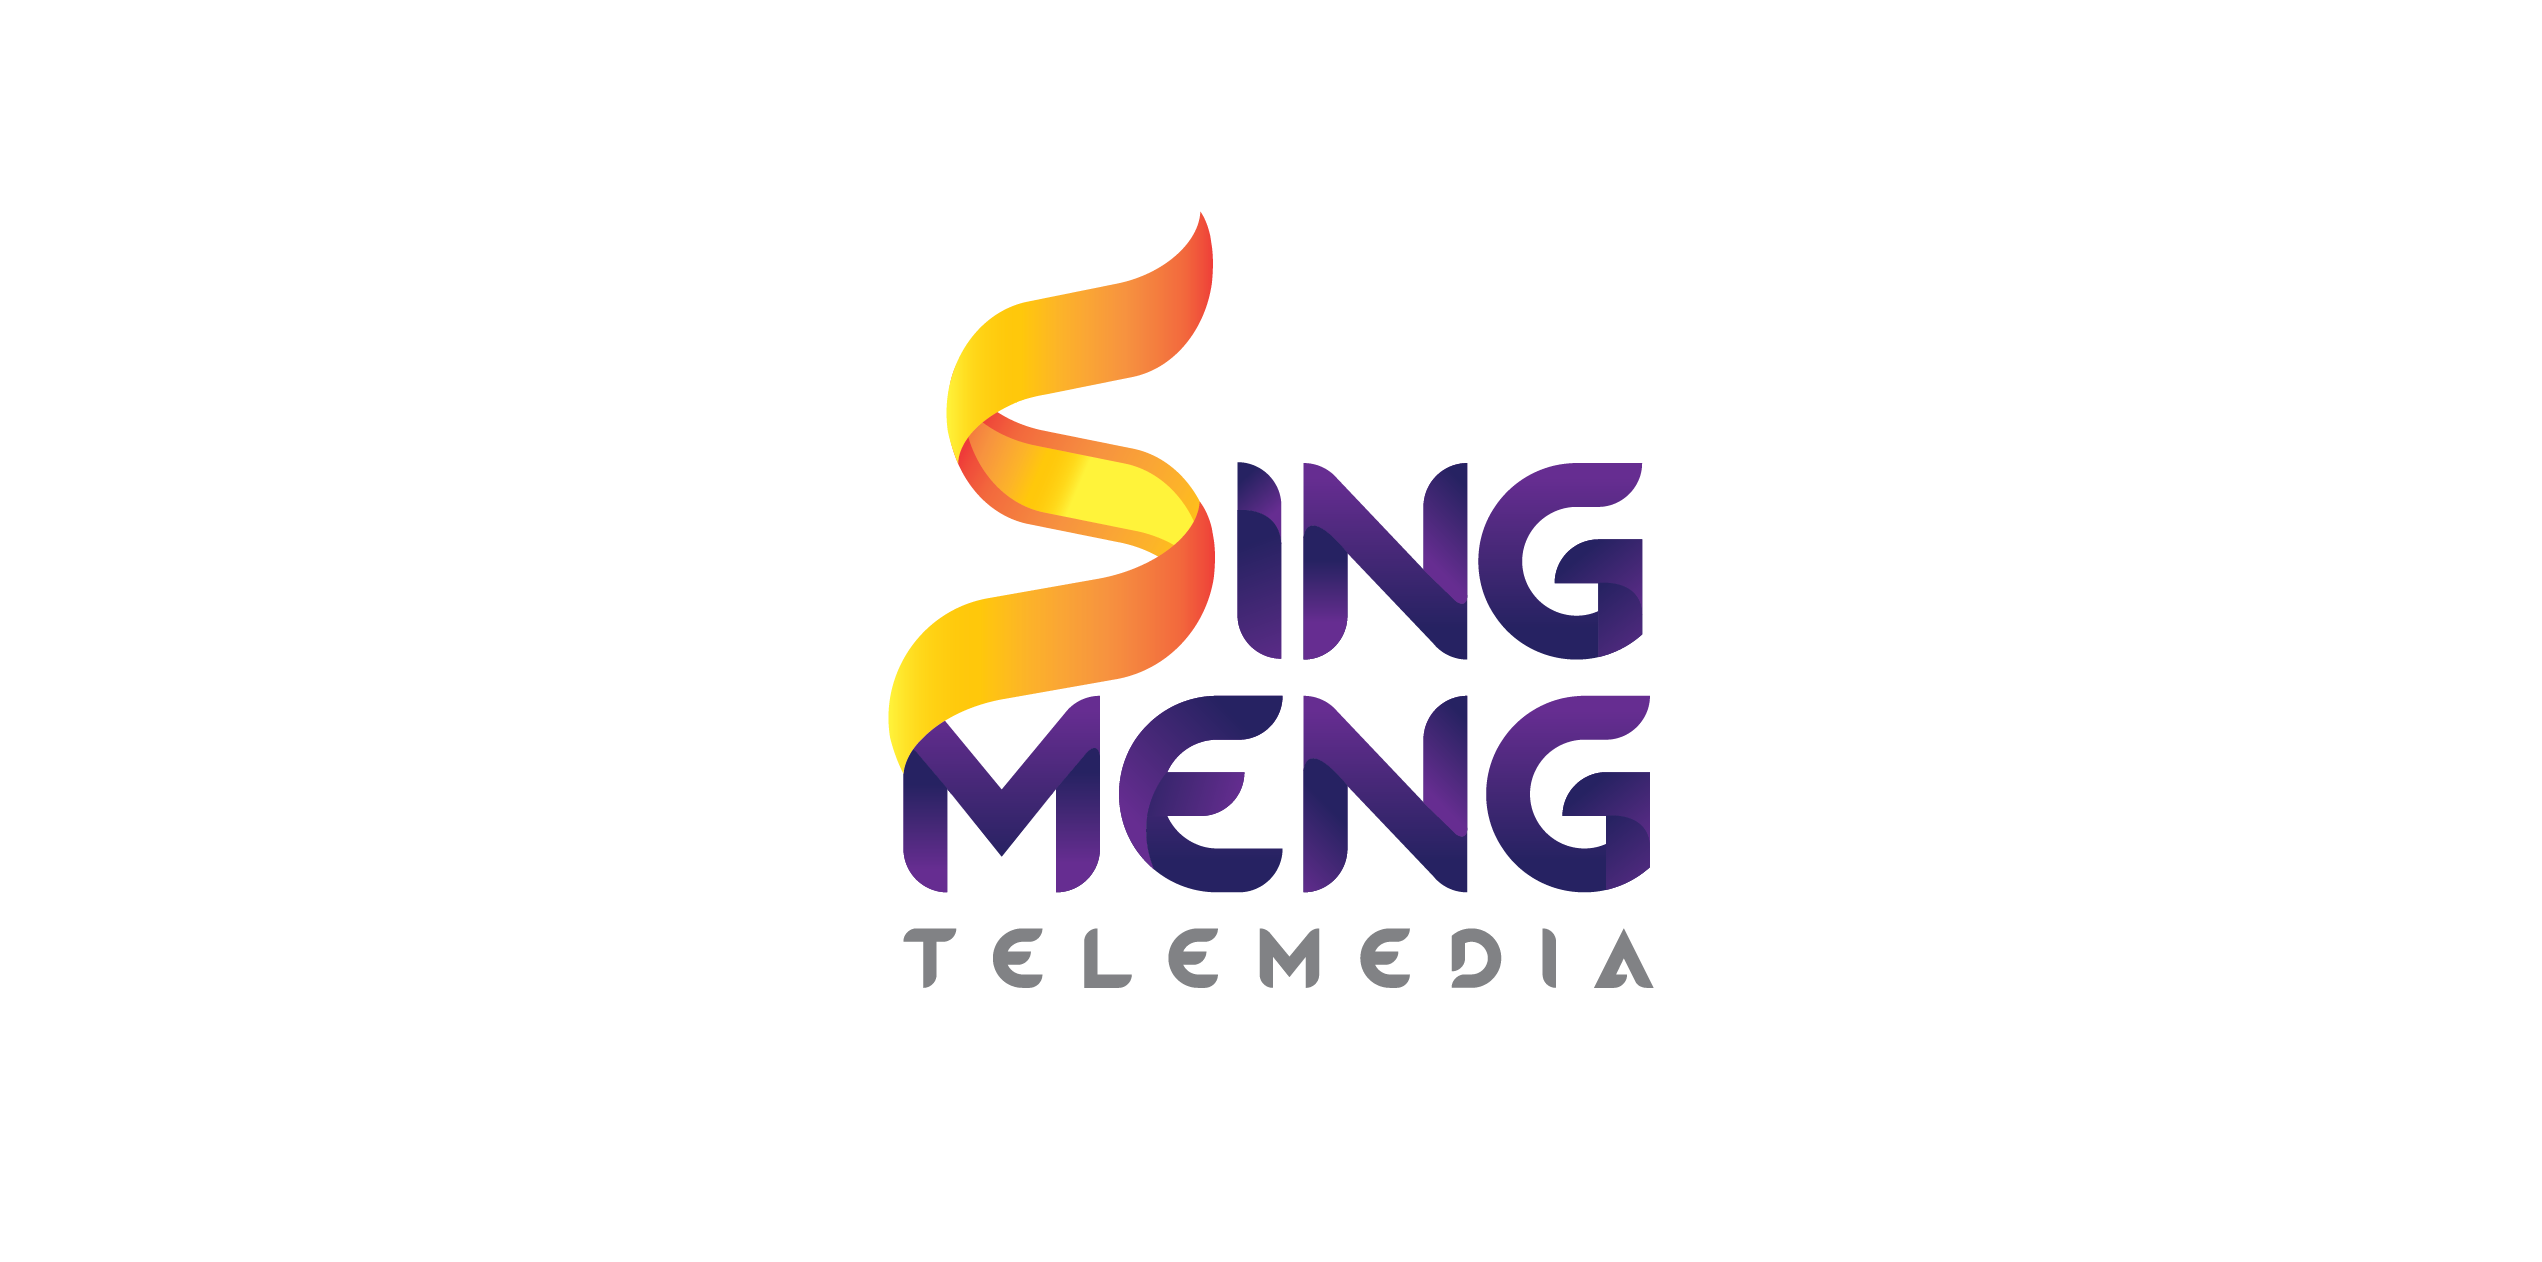 SingMeng Telemedia Cambodia